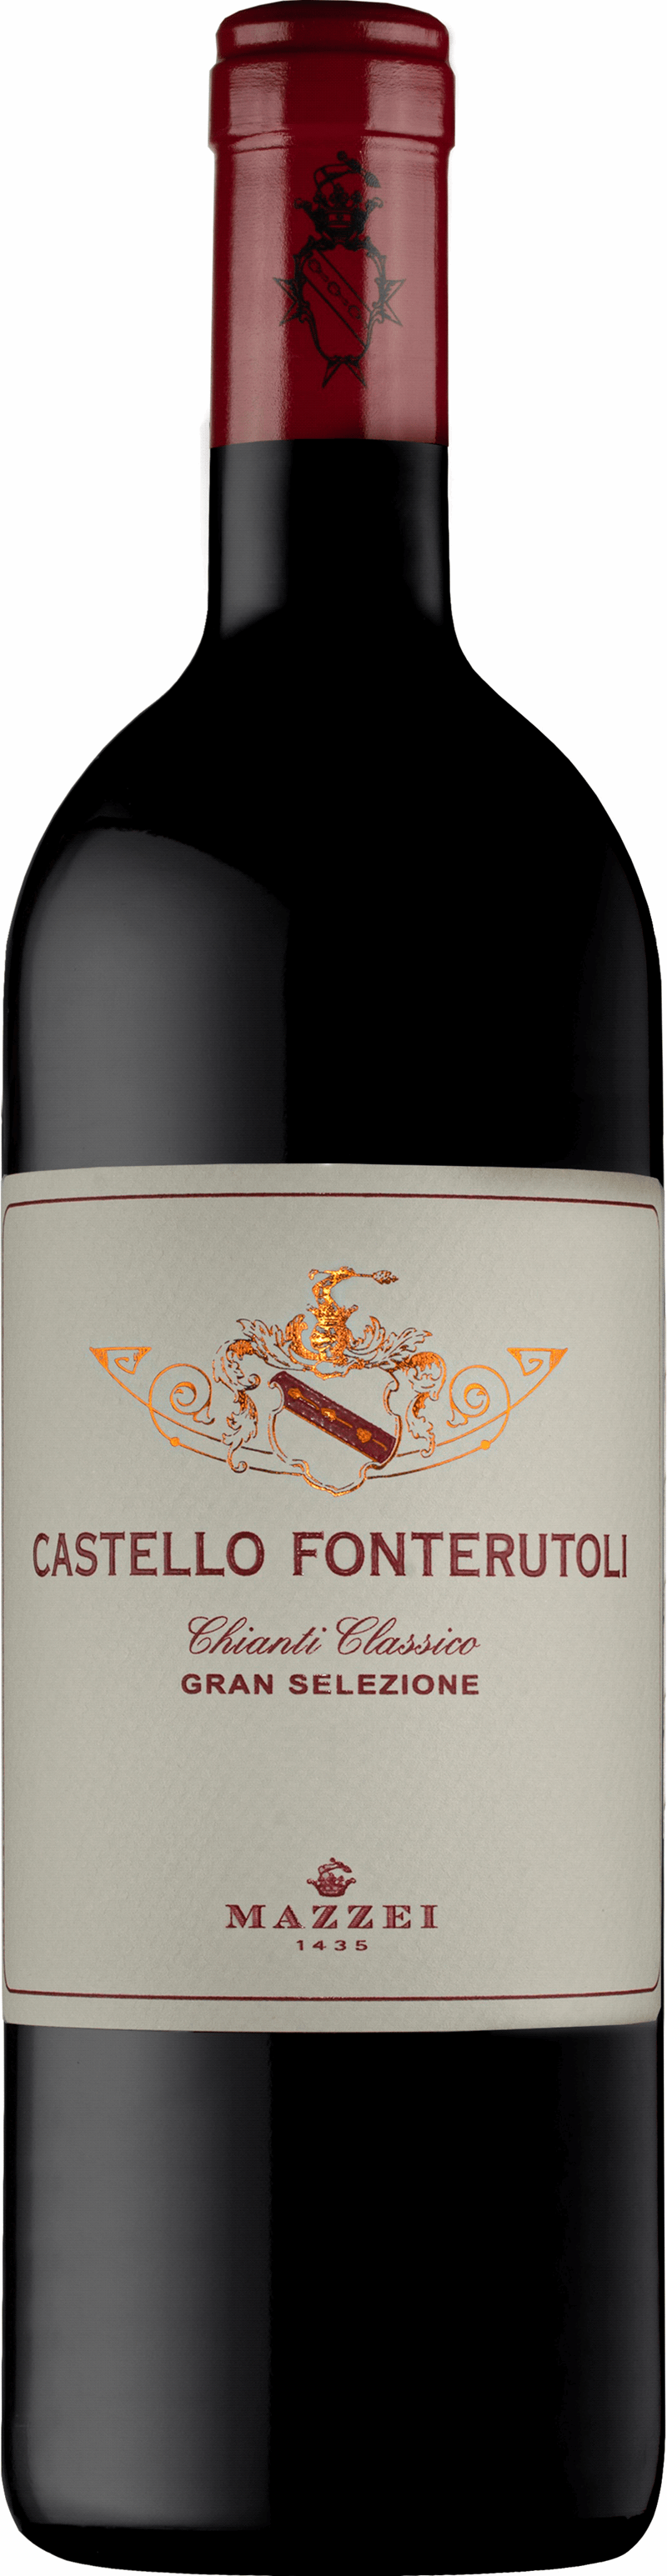 CastelloFonterutoli2017_winetable